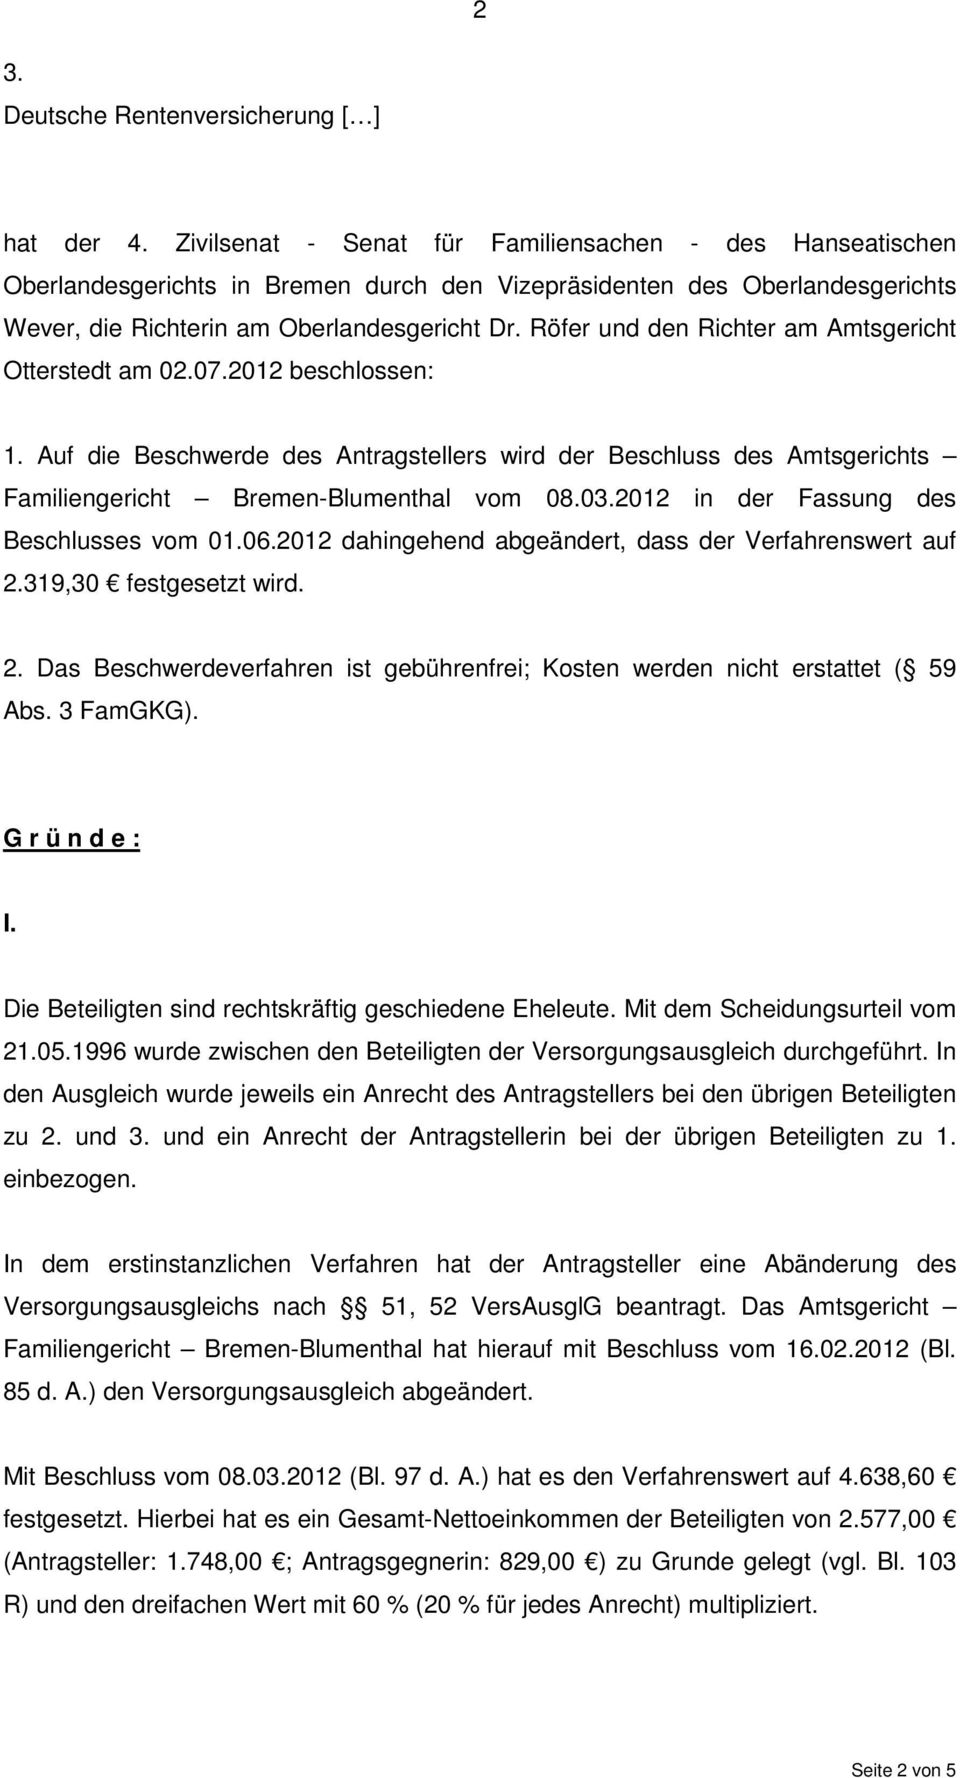 Röfer und den Richter am Amtsgericht Otterstedt am 02.07.2012 beschlossen: 1. Auf die Beschwerde des Antragstellers wird der Beschluss des Amtsgerichts Familiengericht Bremen-Blumenthal vom 08.03.